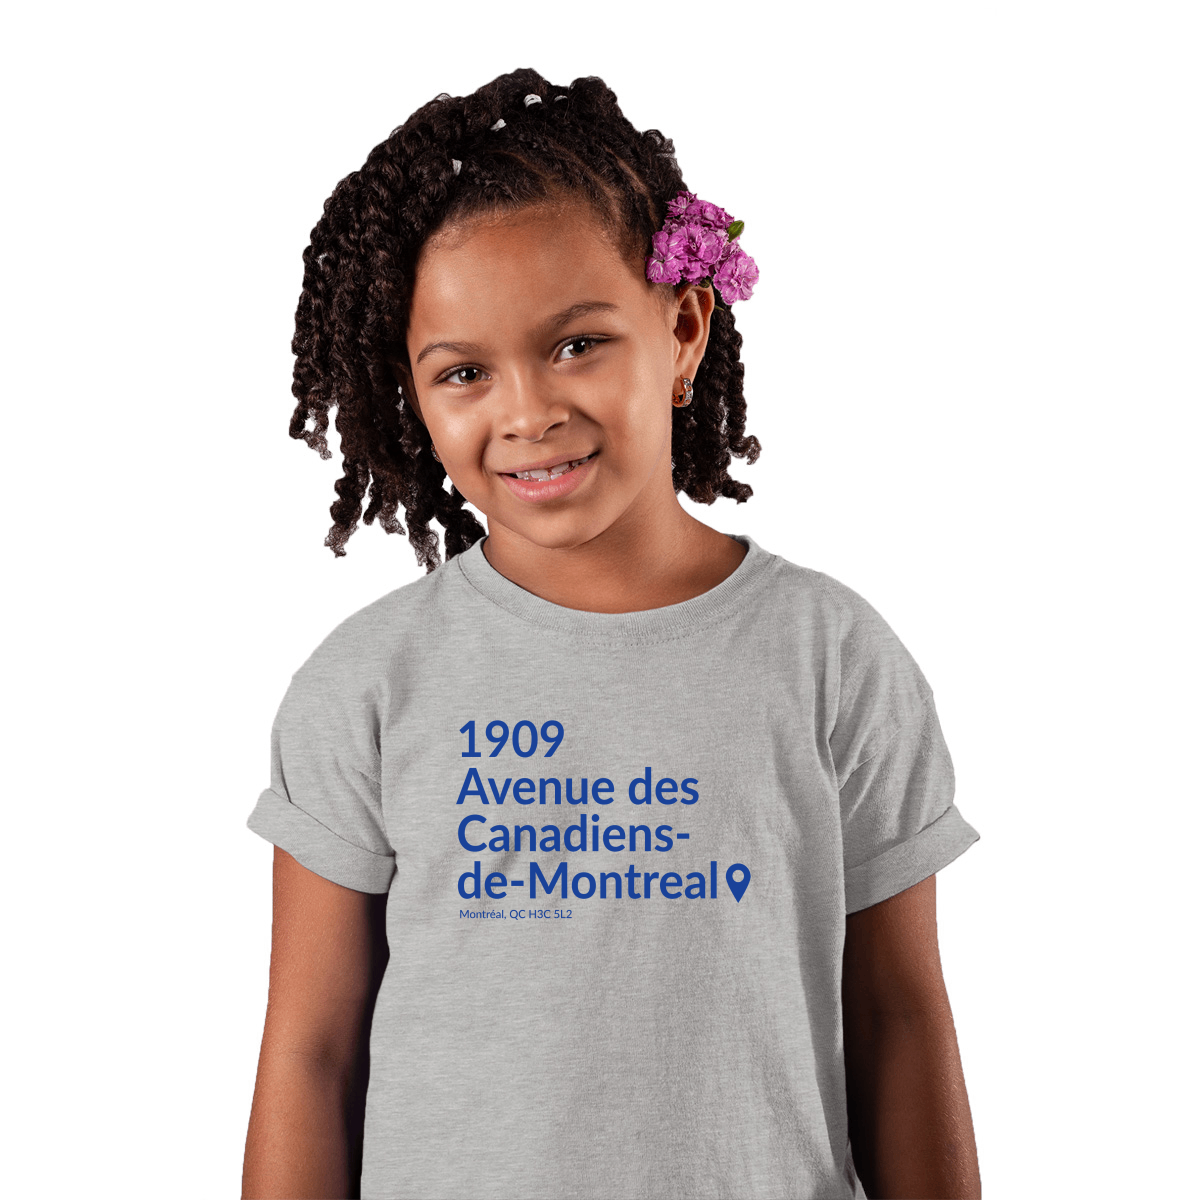 Montreal Hockey Stadium Kids T-shirt | Gray